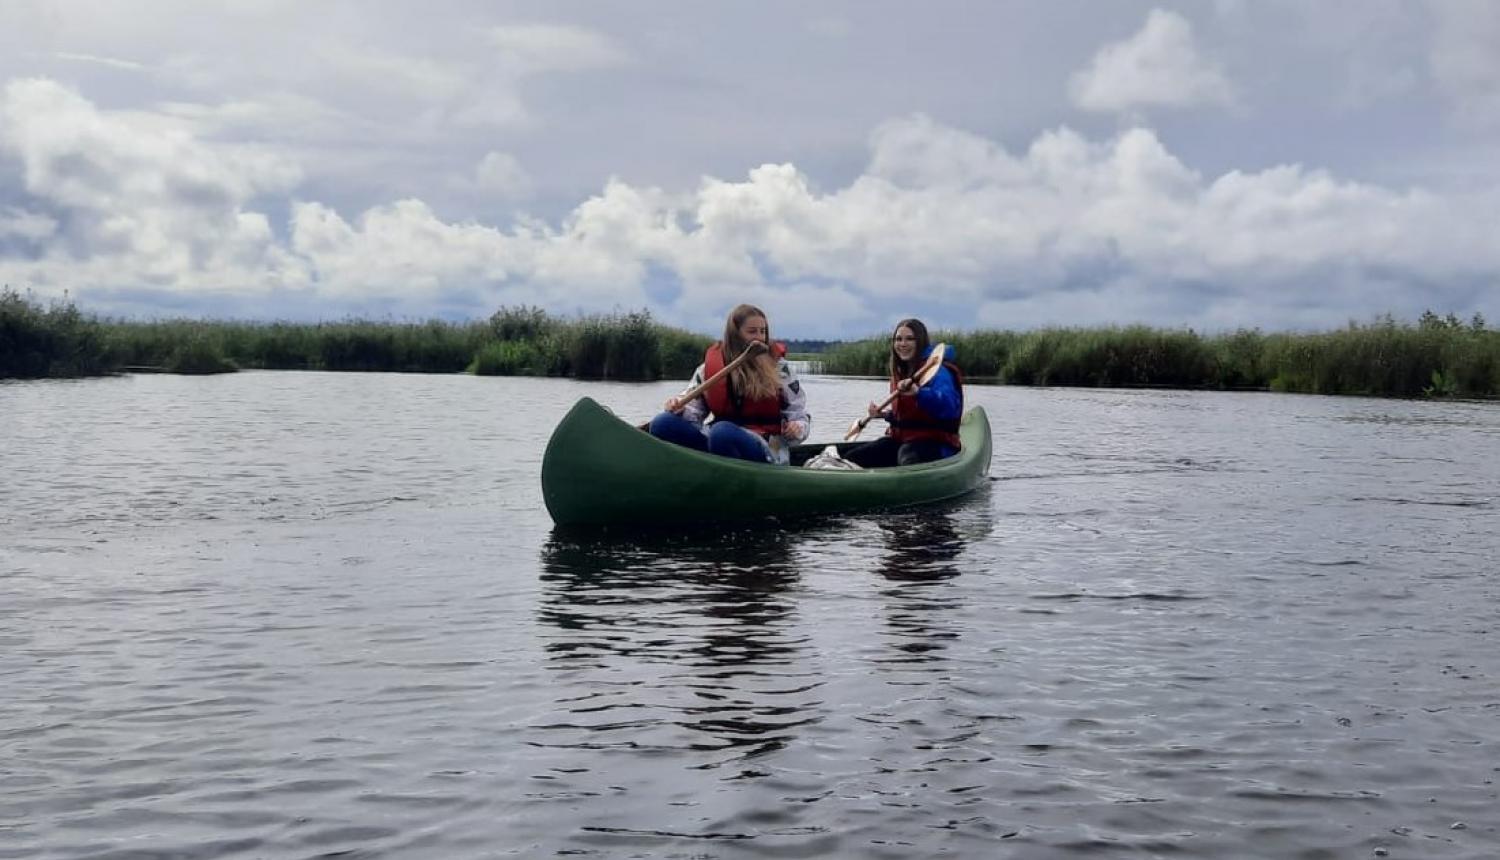 divas meitenes laivā uz ezera